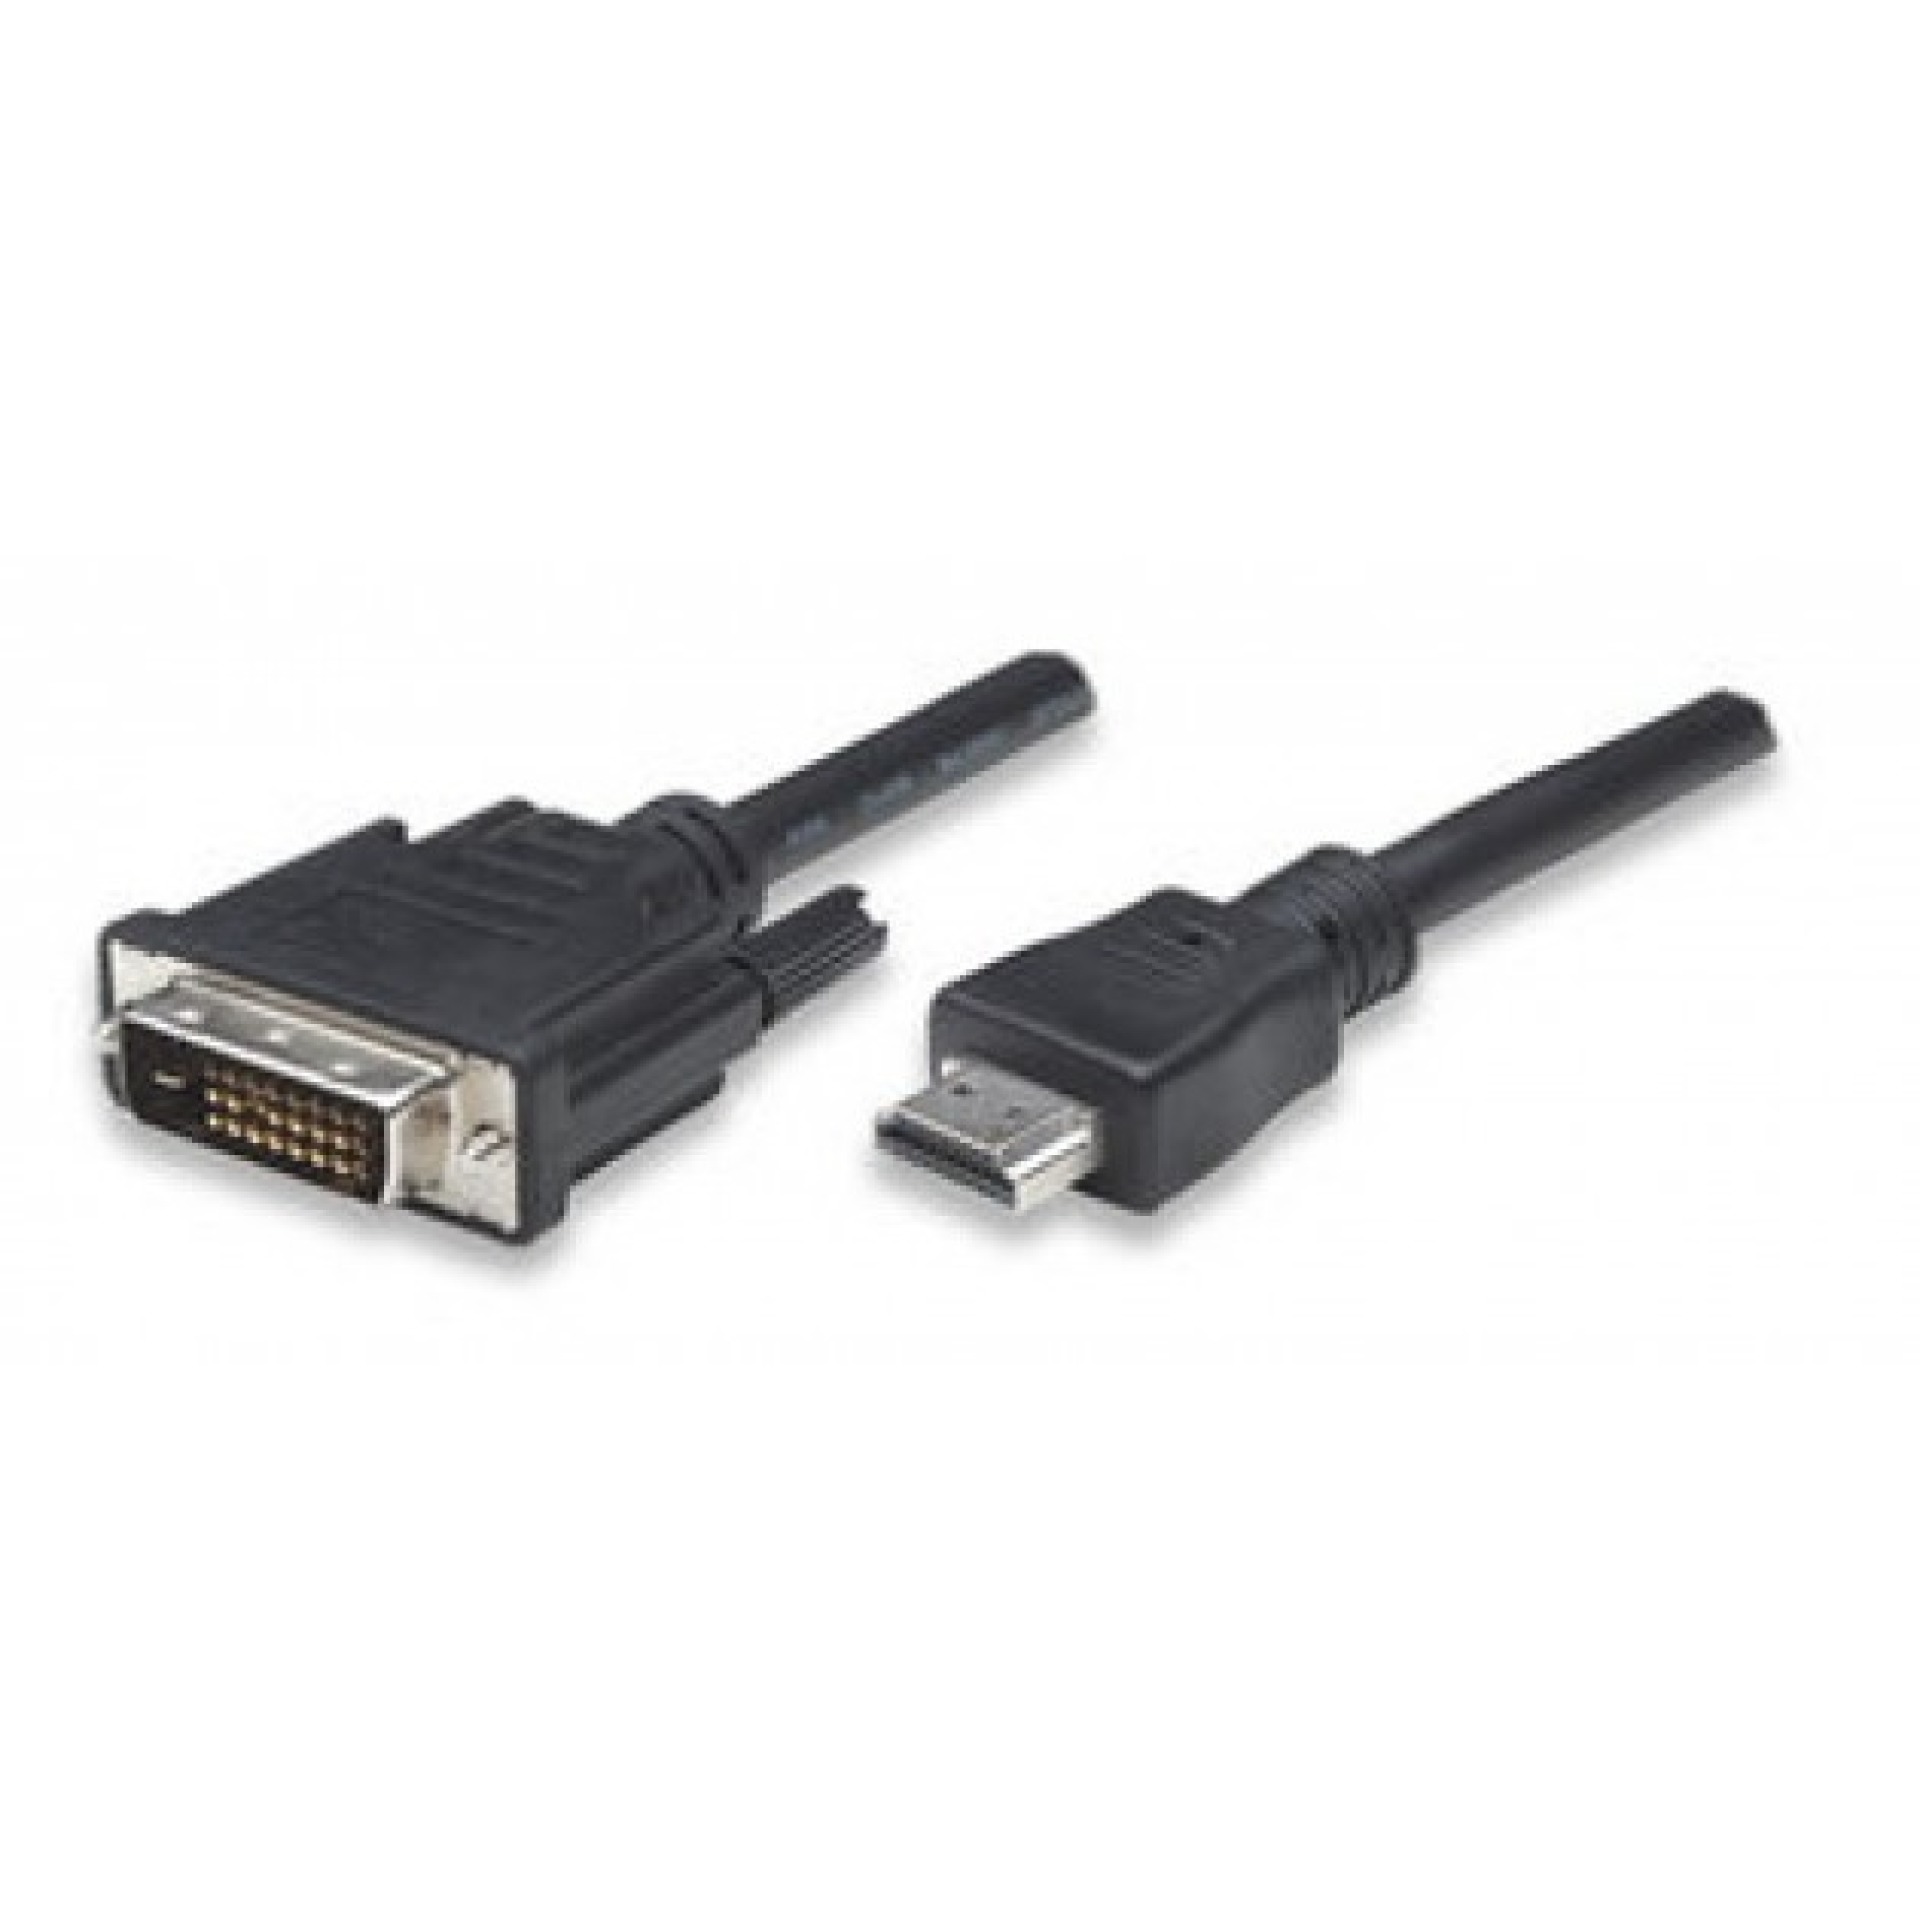 HDMI zu DVI-D Anschlusskabel, schwarz, 10 m